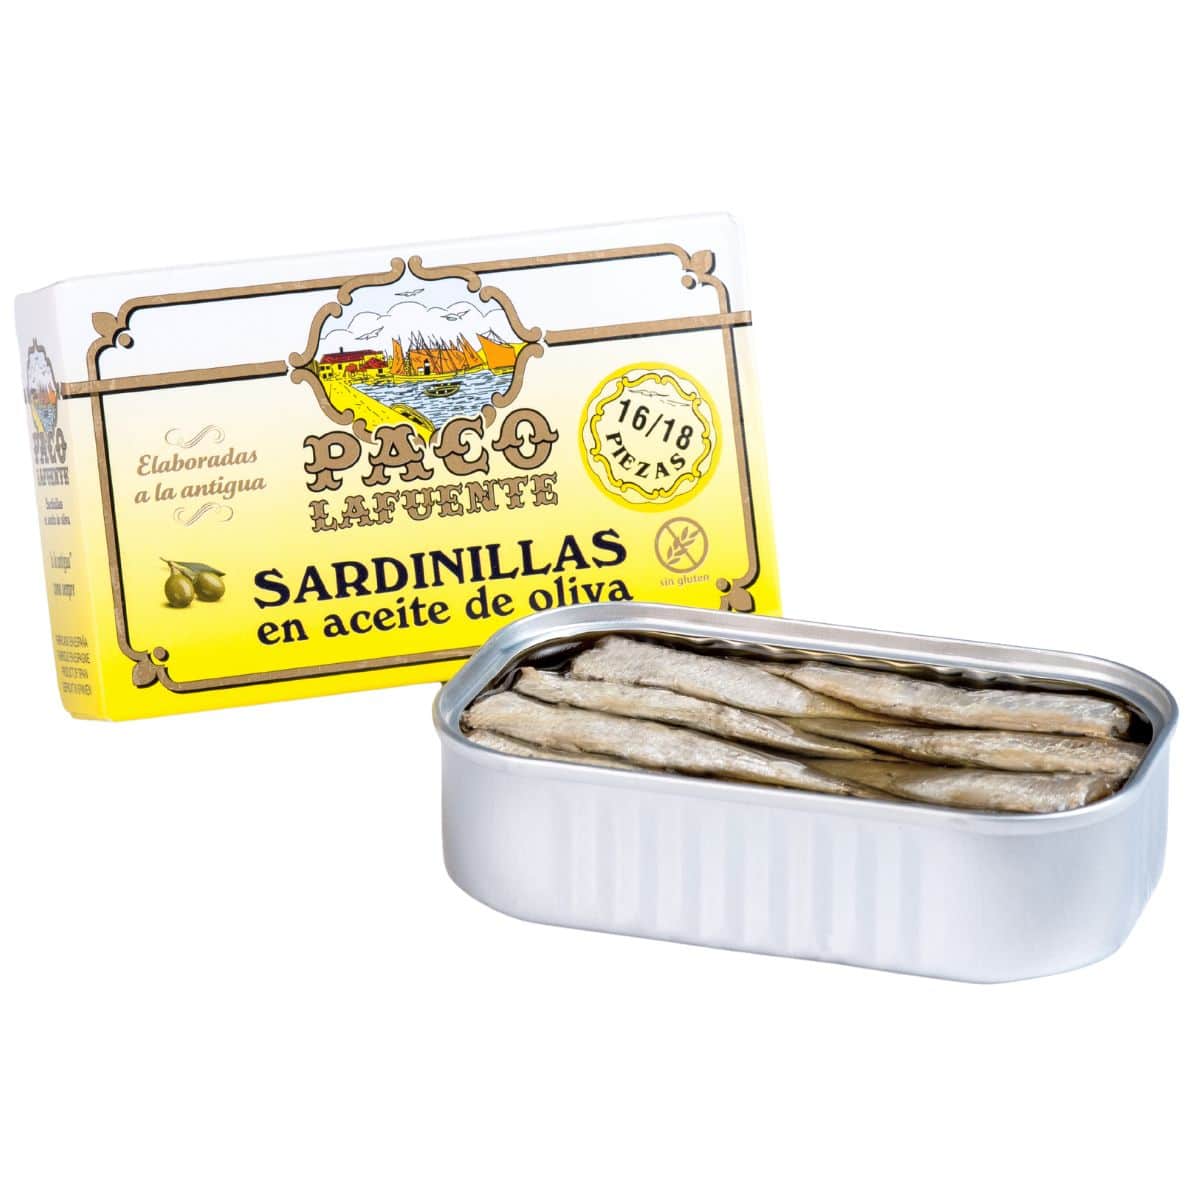 Sardinillas en aceite de oliva 16/18 pzas Conservas Paco Lafuente